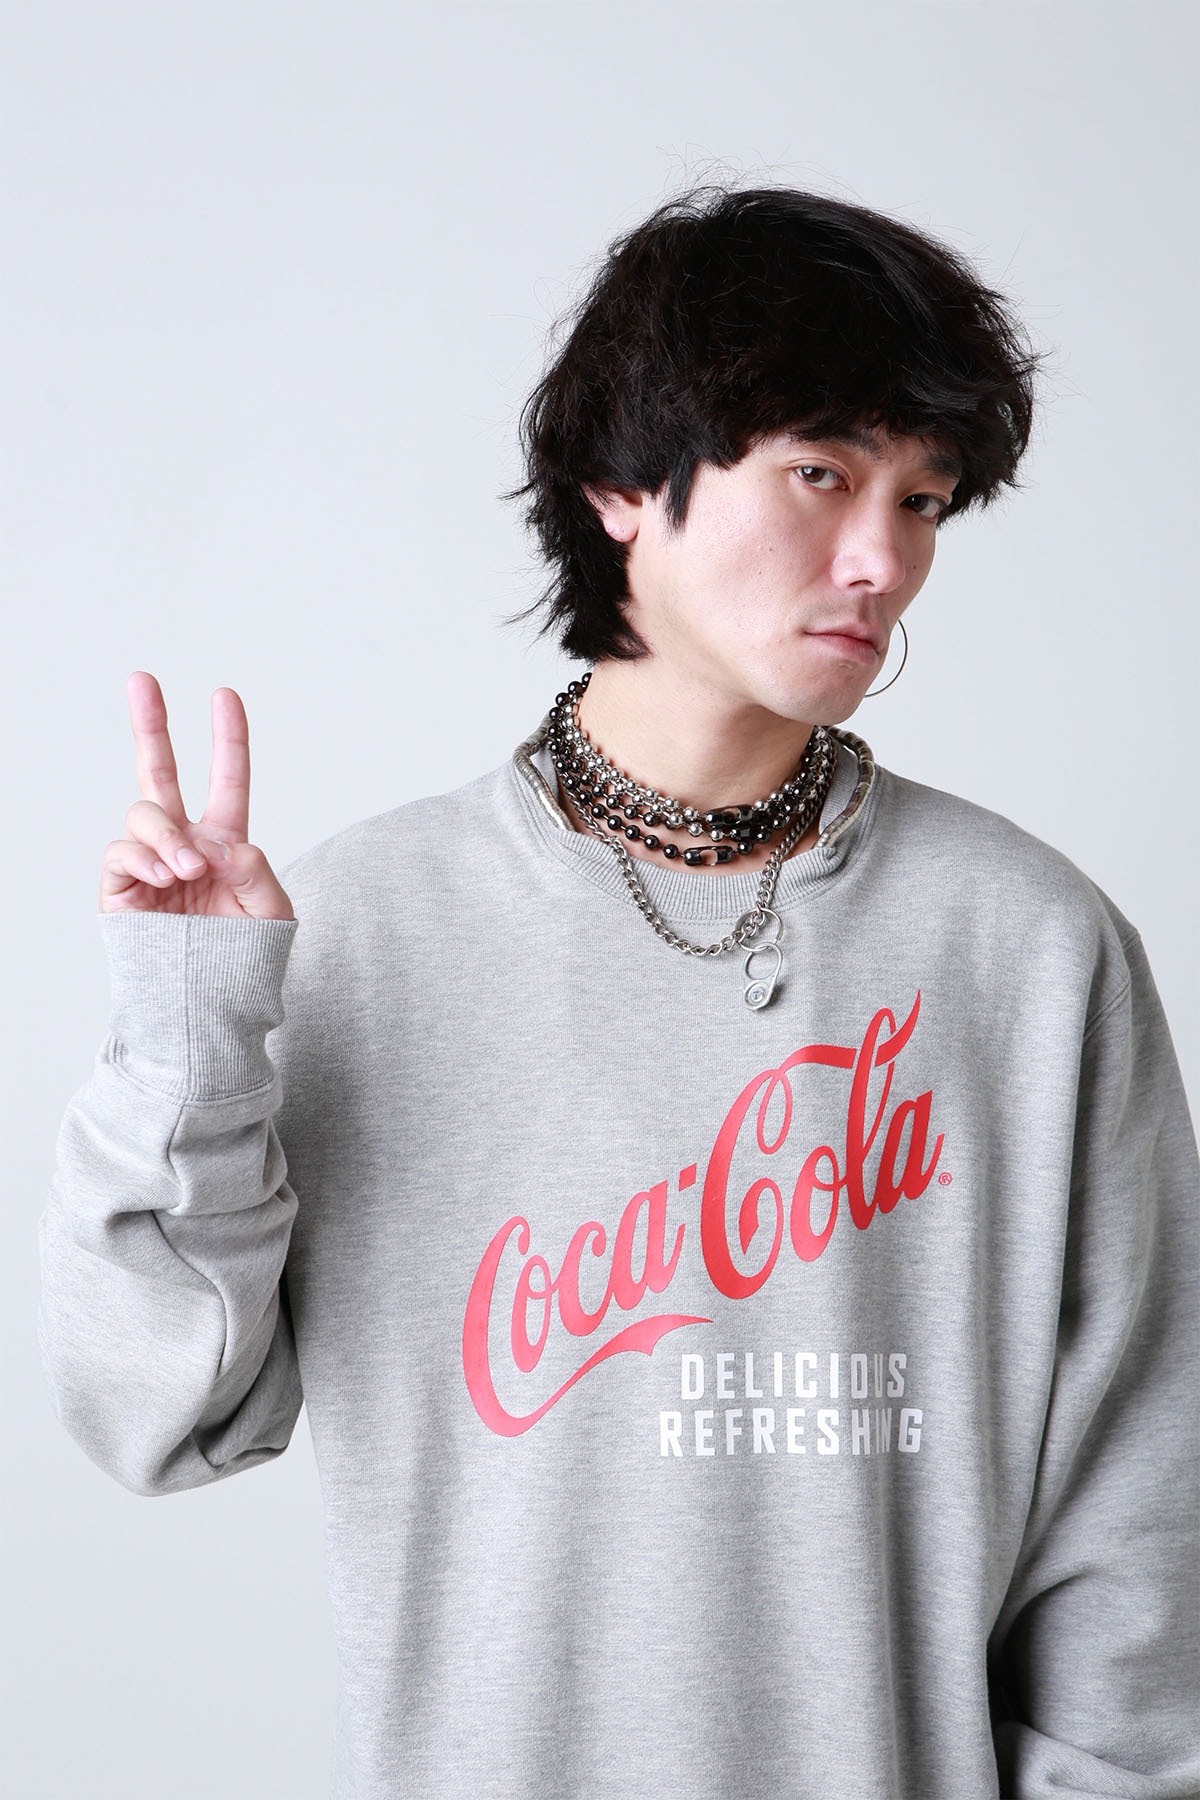 日本初となる Coca-Cola Shop in atmos が原宿にオープン The first Coca-Cola Shop in atmos opens in Harajuku